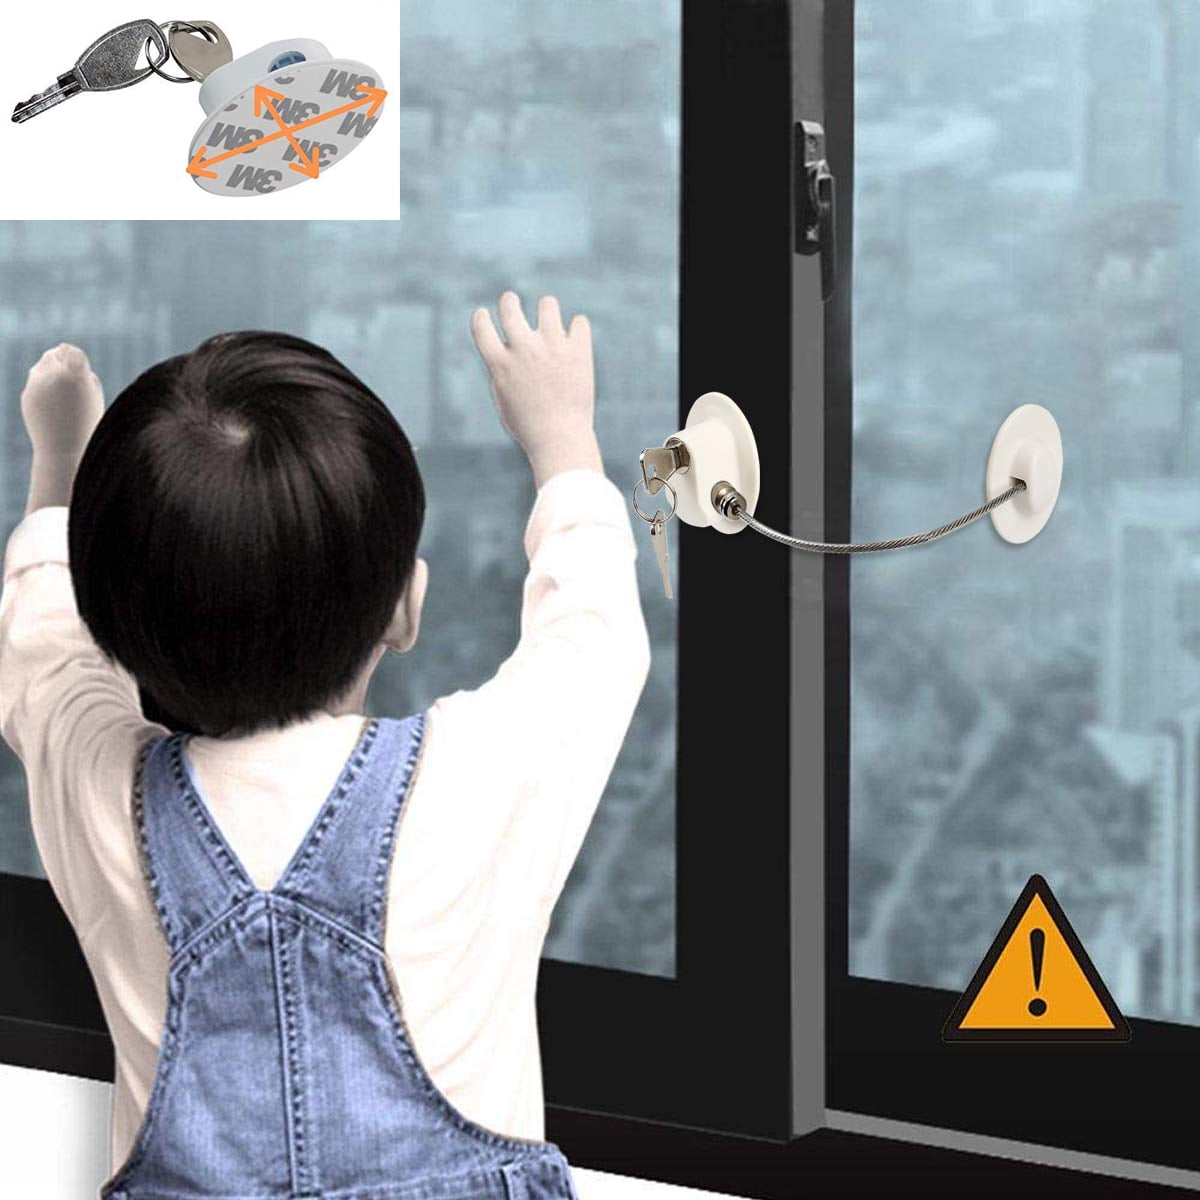 Buy Child Safety Lock For Fridge online